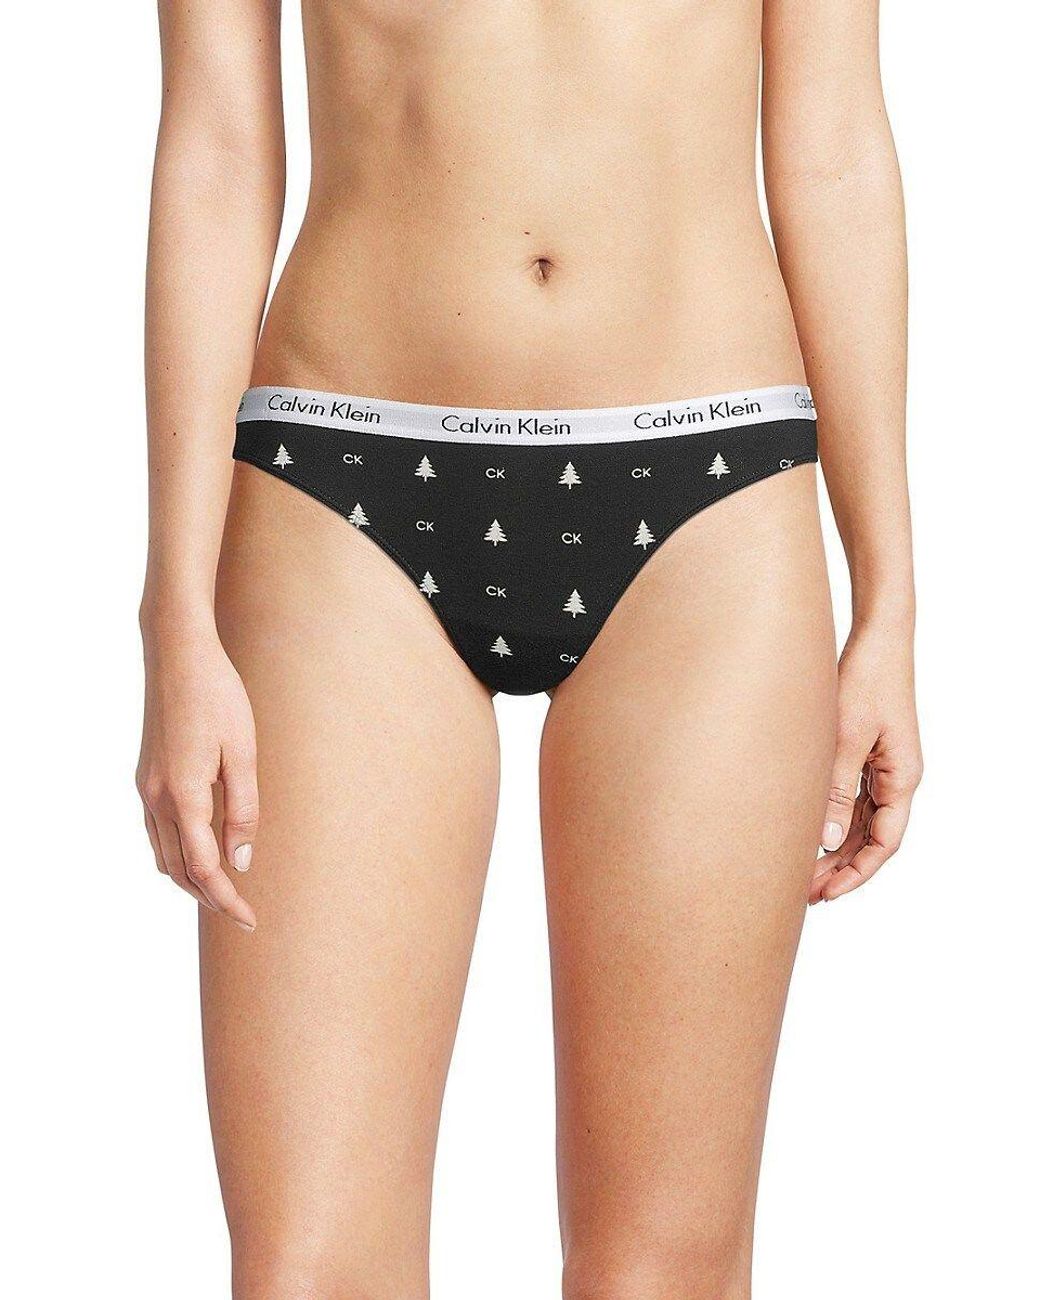 Panties Calvin Klein 3 Pack Thong Panty Black/ White/ Honey Almond